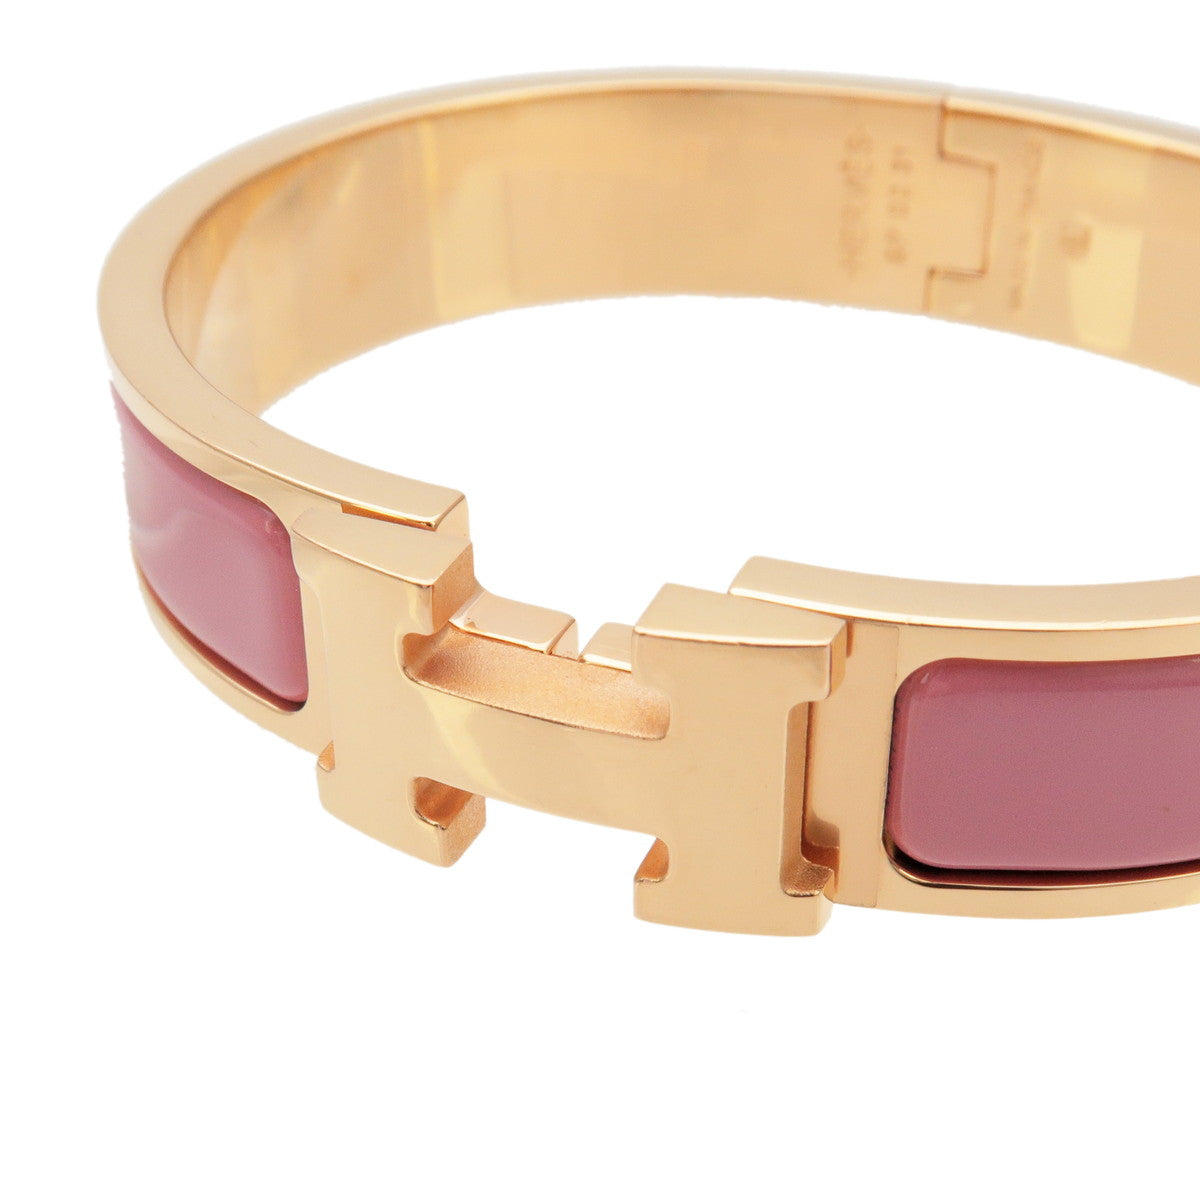 Hermes Hapi double wrap etoupe leather bracelet with gold tone hardware  Large | eBay